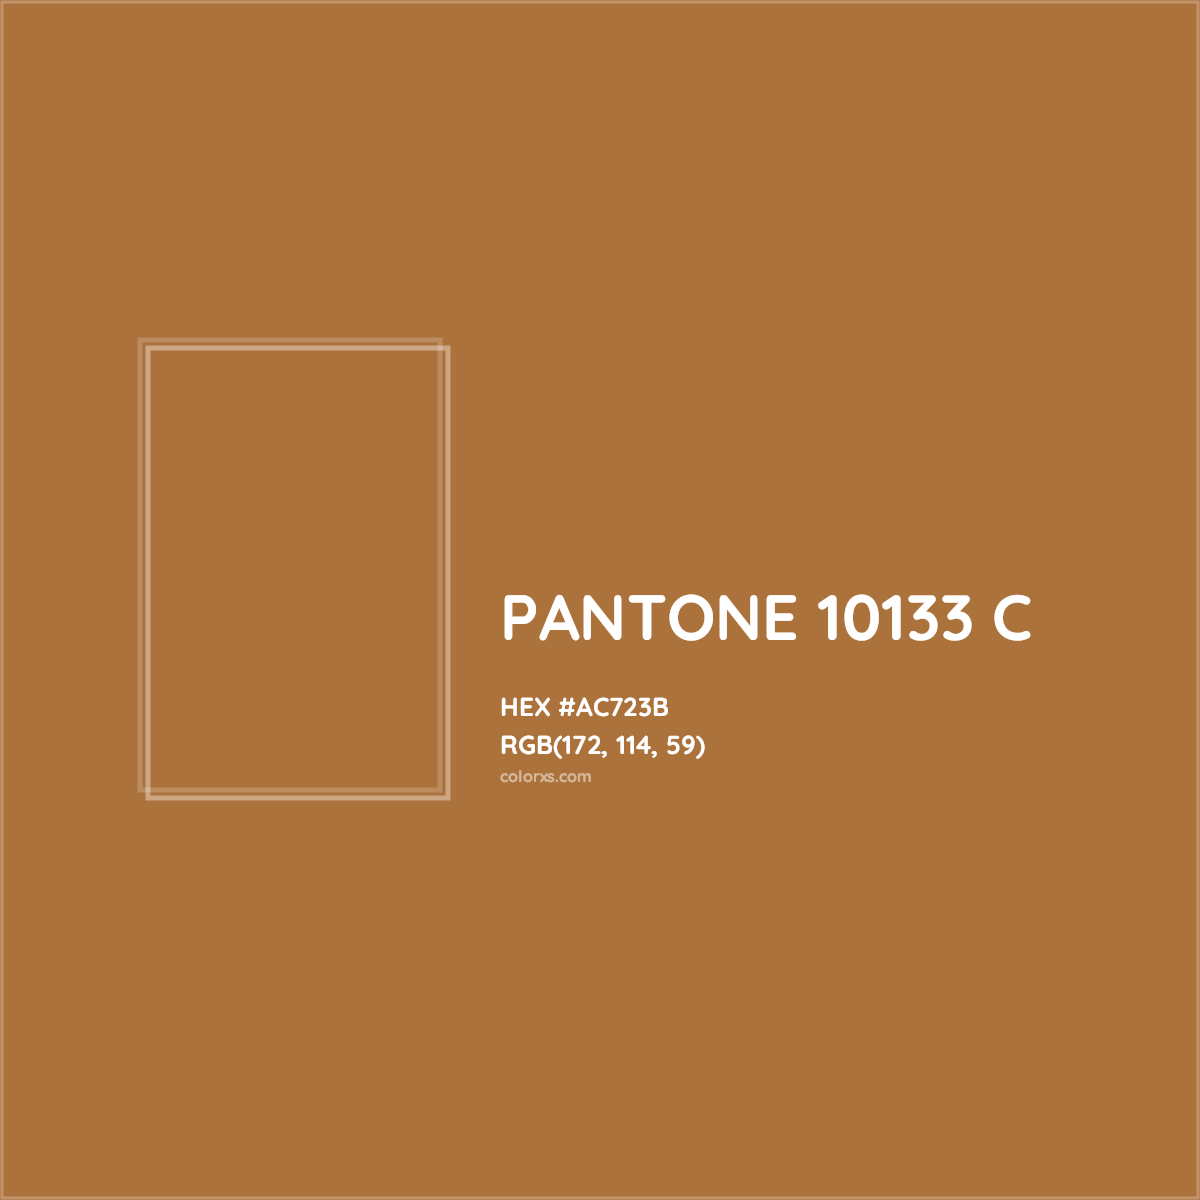 HEX #AC723B PANTONE 10133 C CMS Pantone PMS - Color Code